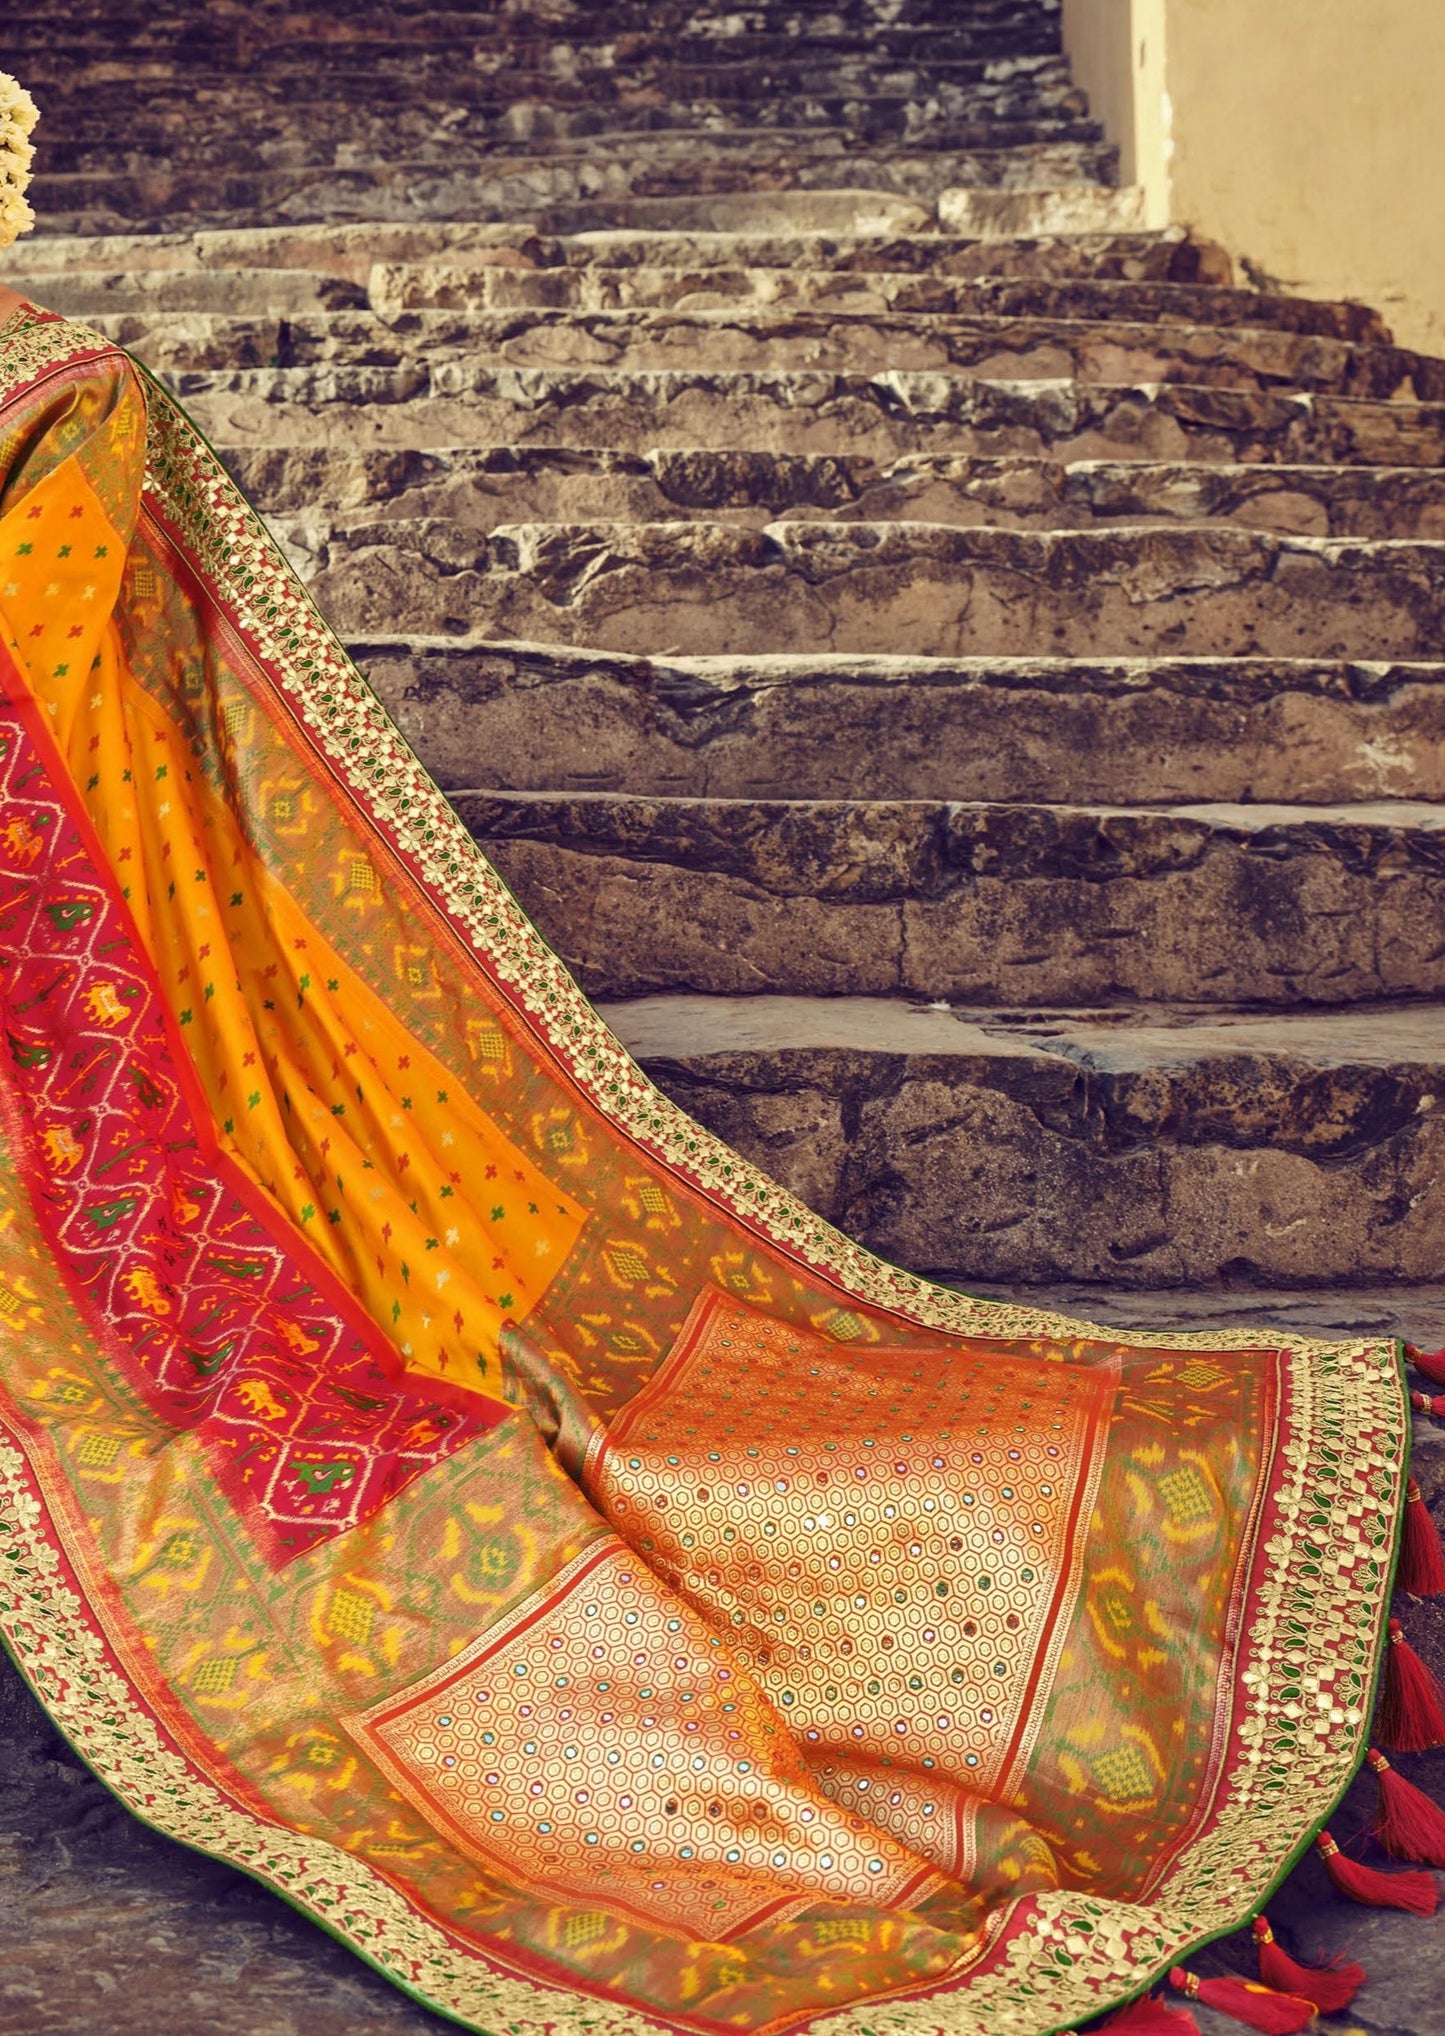 Banarasi Patola Silk Red and Yellow Bridal Saree